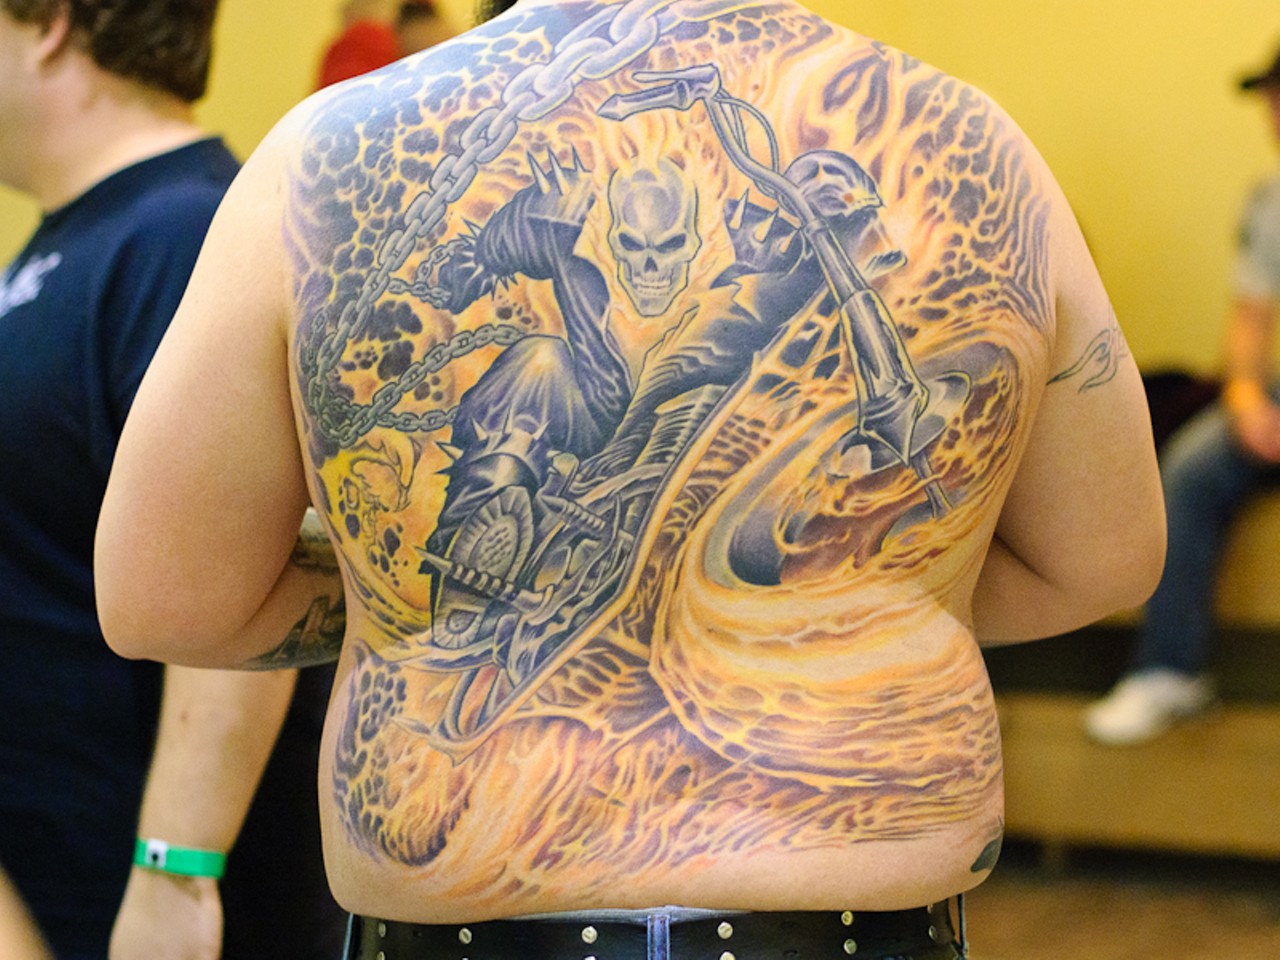 BadTattoos.com : Tattoos : Bad Tattoos : Ghost RIder tattoo fail